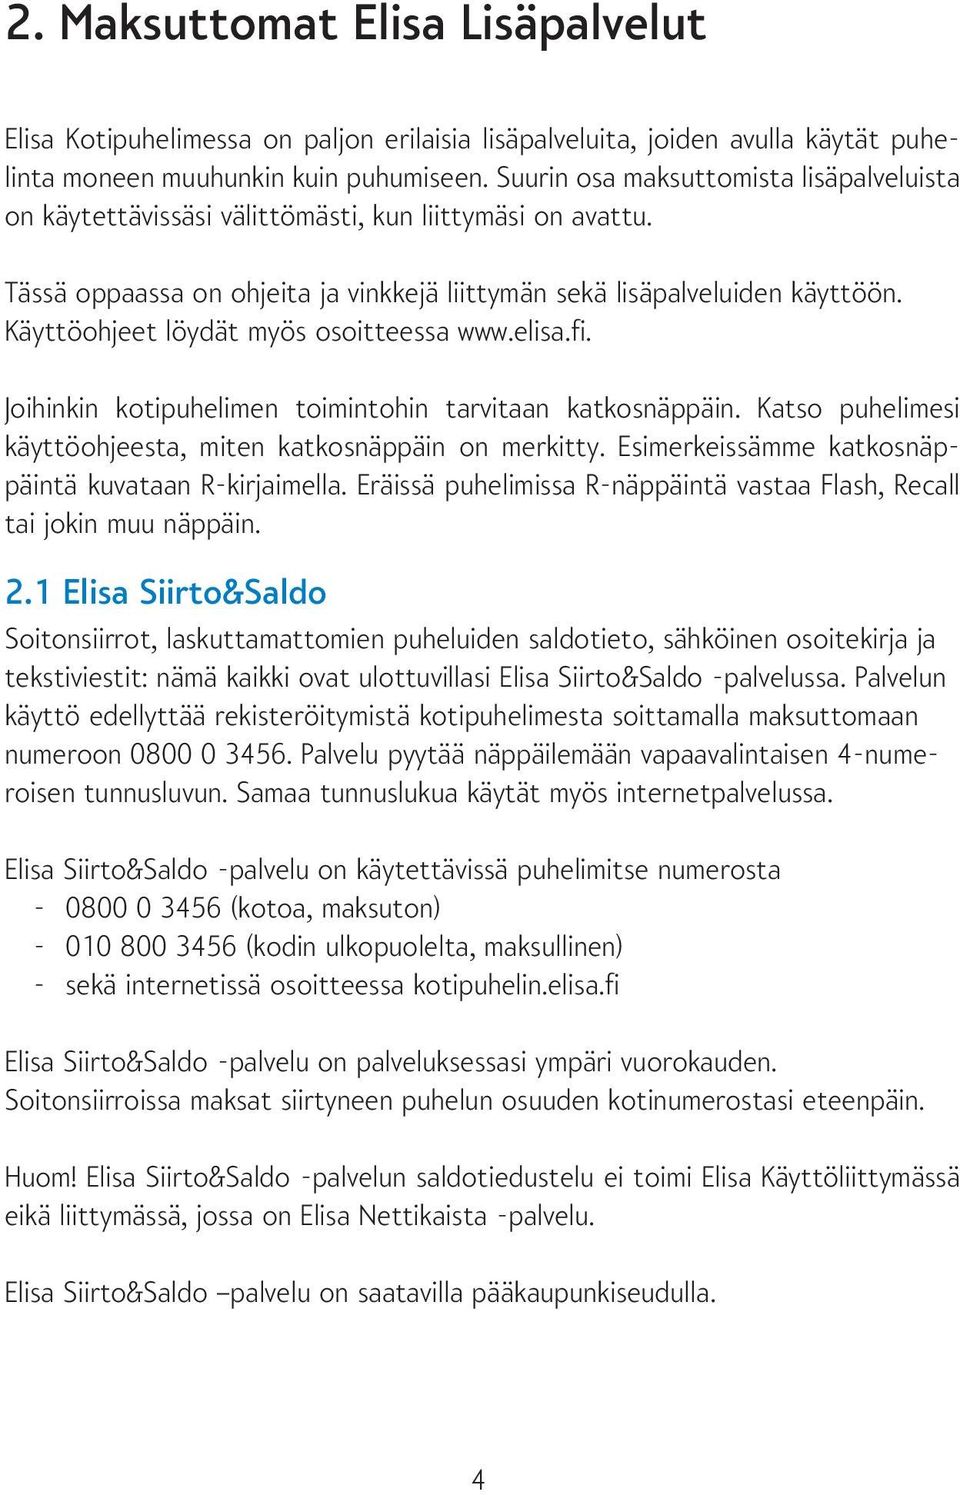 Käyttöohjeet löydät myös osoitteessa www.elisa.fi. Joihinkin kotipuhelimen toimintohin tarvitaan katkosnäppäin. Katso puhelimesi käyttöohjeesta, miten katkosnäppäin on merkitty.